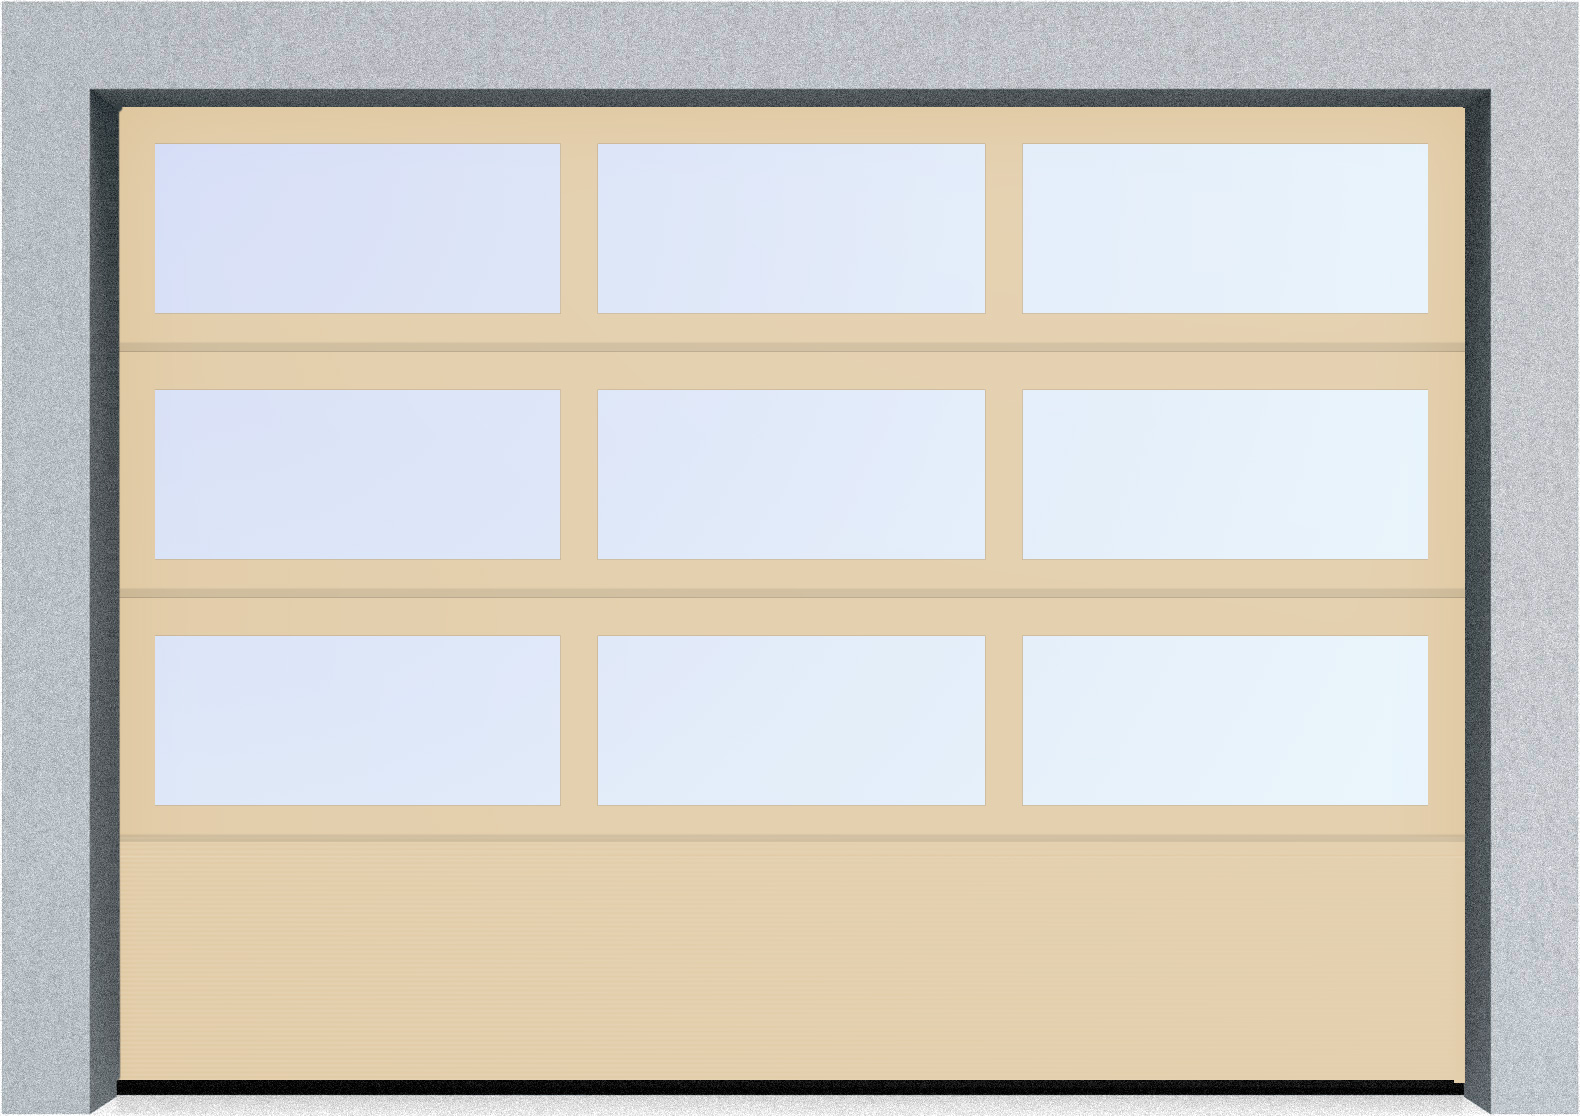  Автоматические секционные панорамные ворота серии AluTrend с комбинированным типом полотна (АЛПС) 6500х4500 S-гофр, Микроволна стандартные цвета, фото 1 